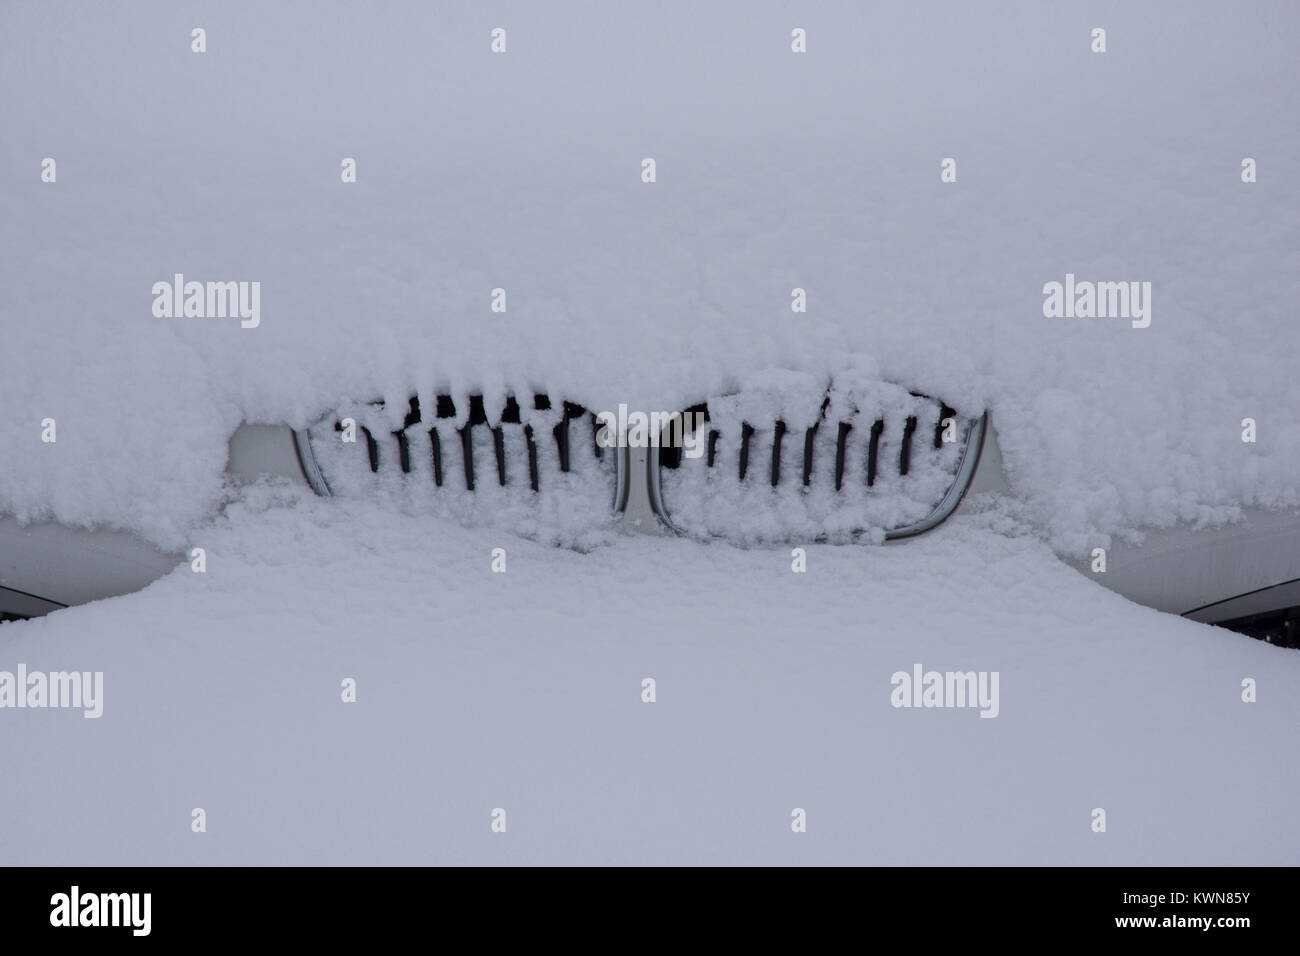 Auto komplett im Schnee gefangen Stockfotografie - Alamy